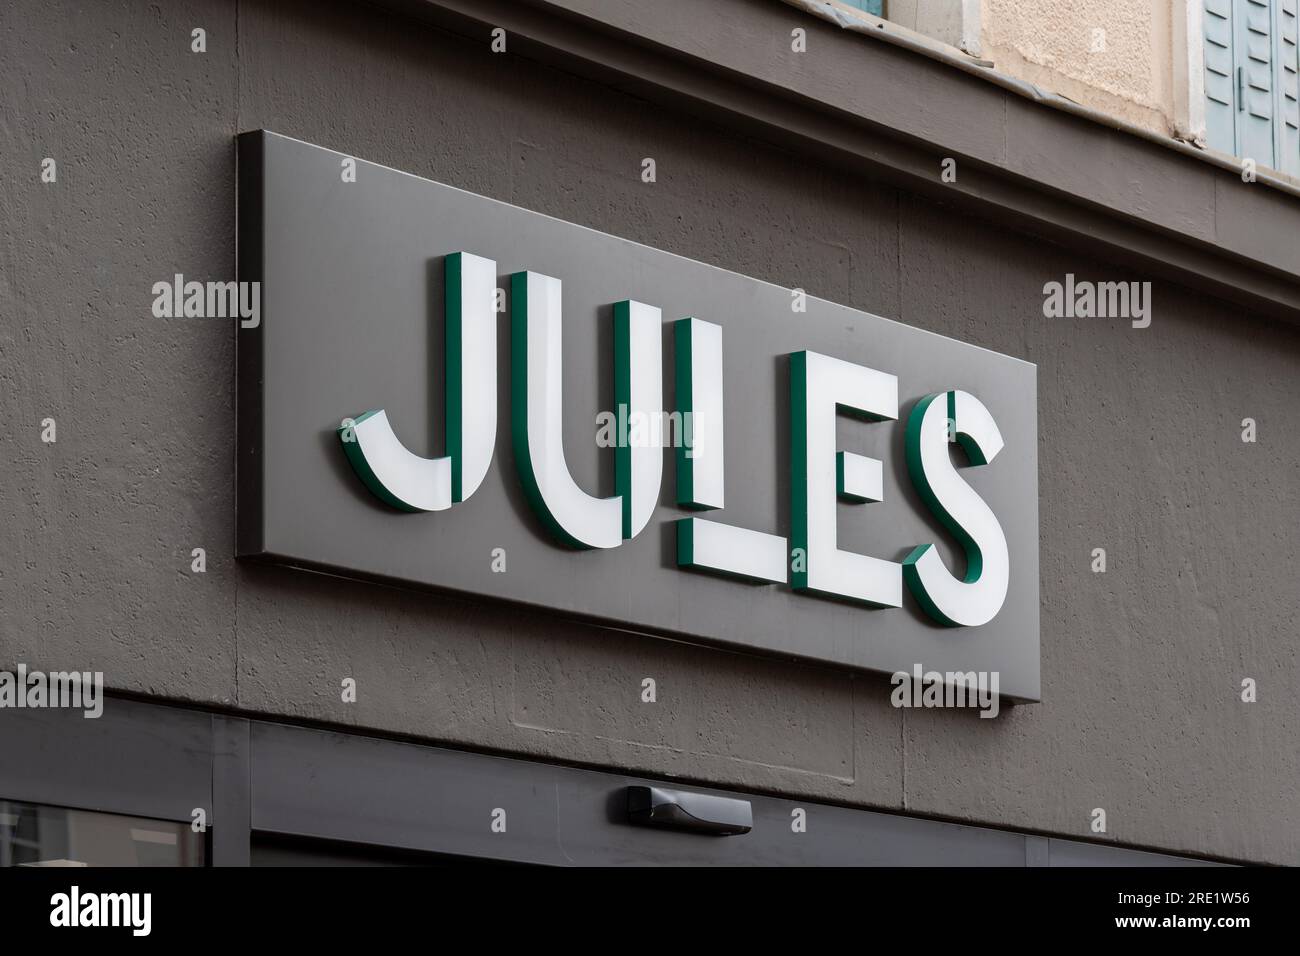 Signo y logotipo de una tienda Jules, una cadena francesa de tiendas de ropa para hombre Foto de stock